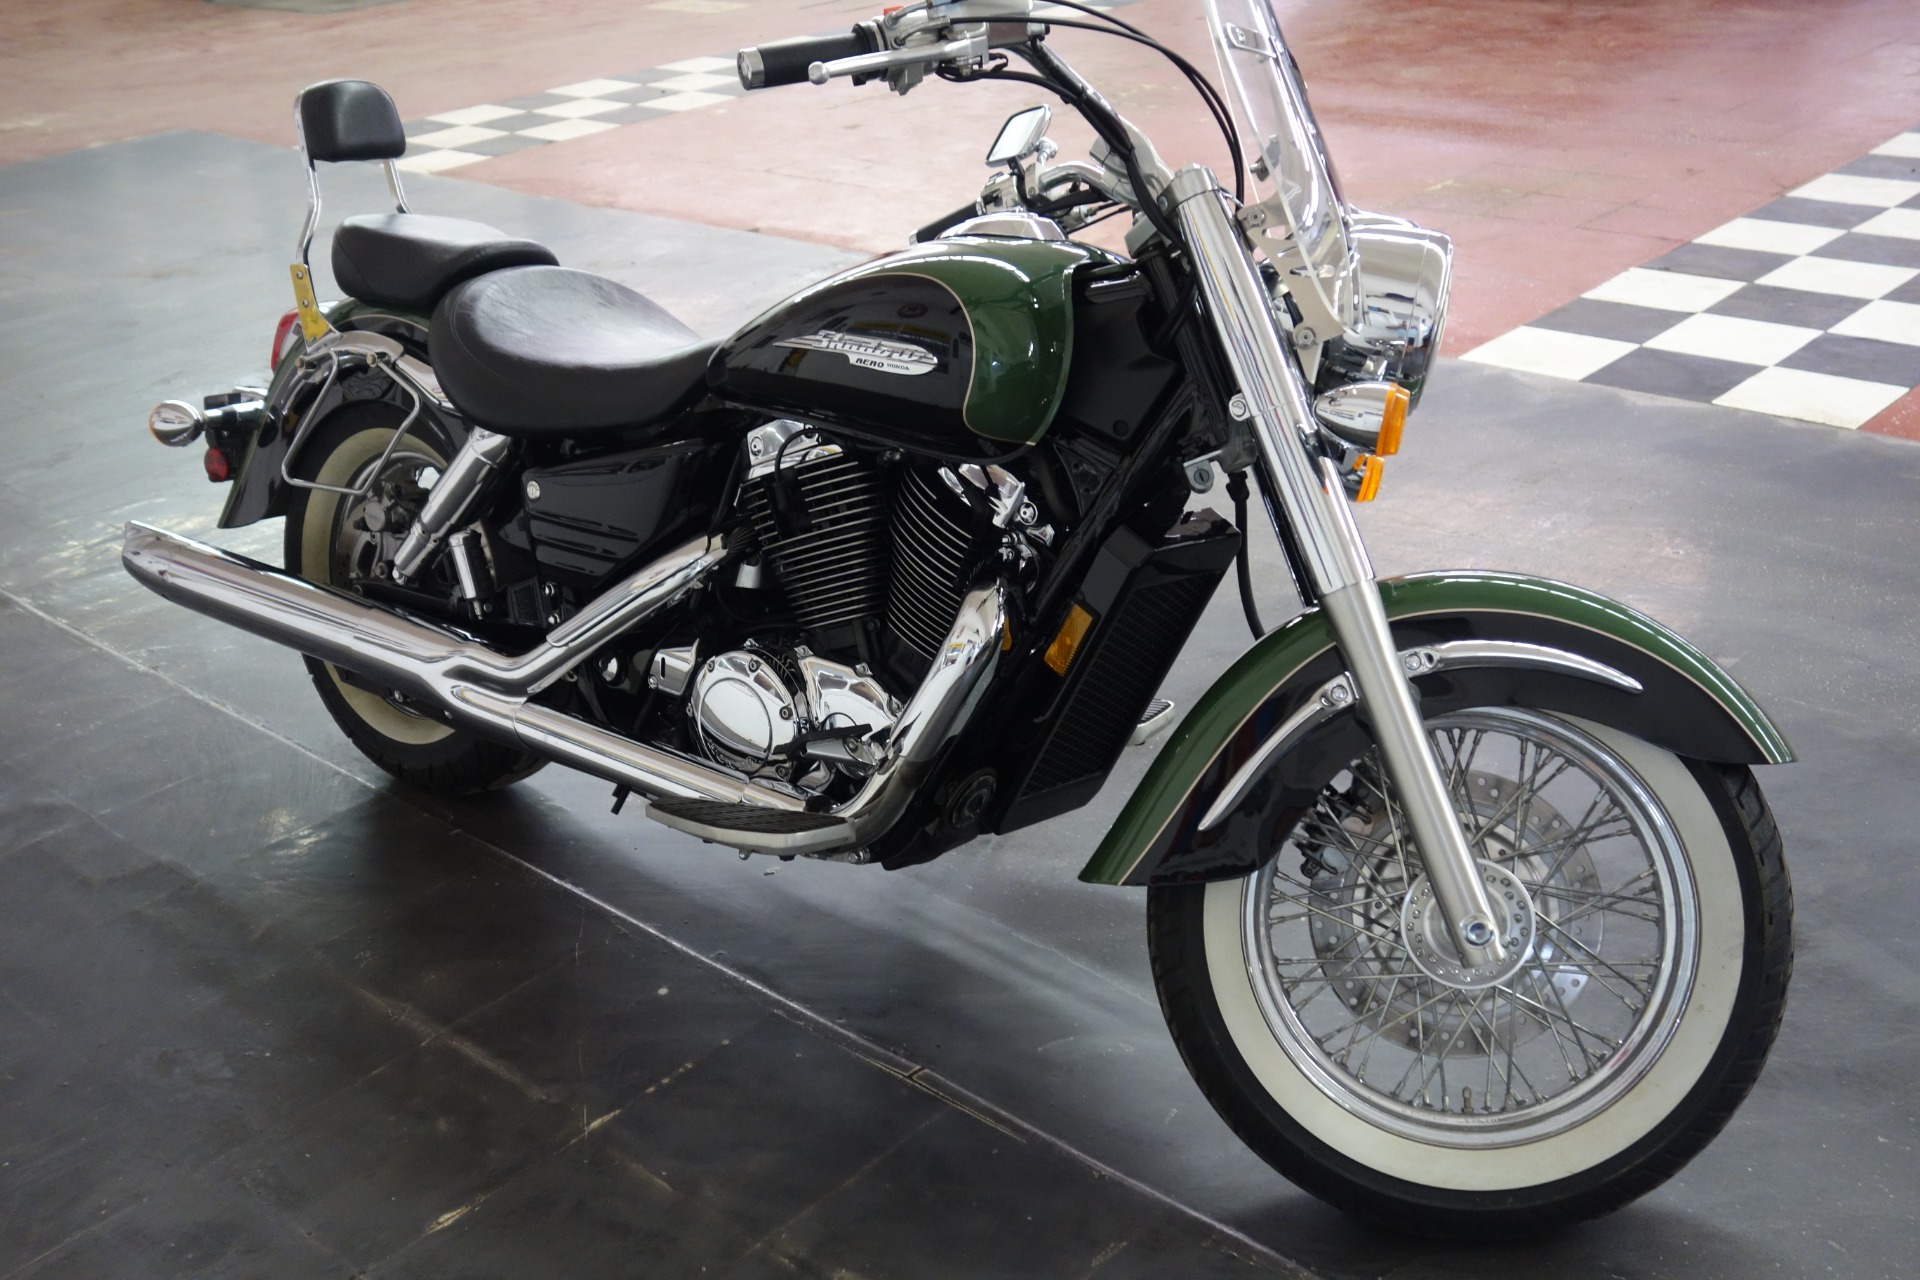 Honda Shadow 750 - мотоцикл мечты для тех, кто ценит скорость и мощность